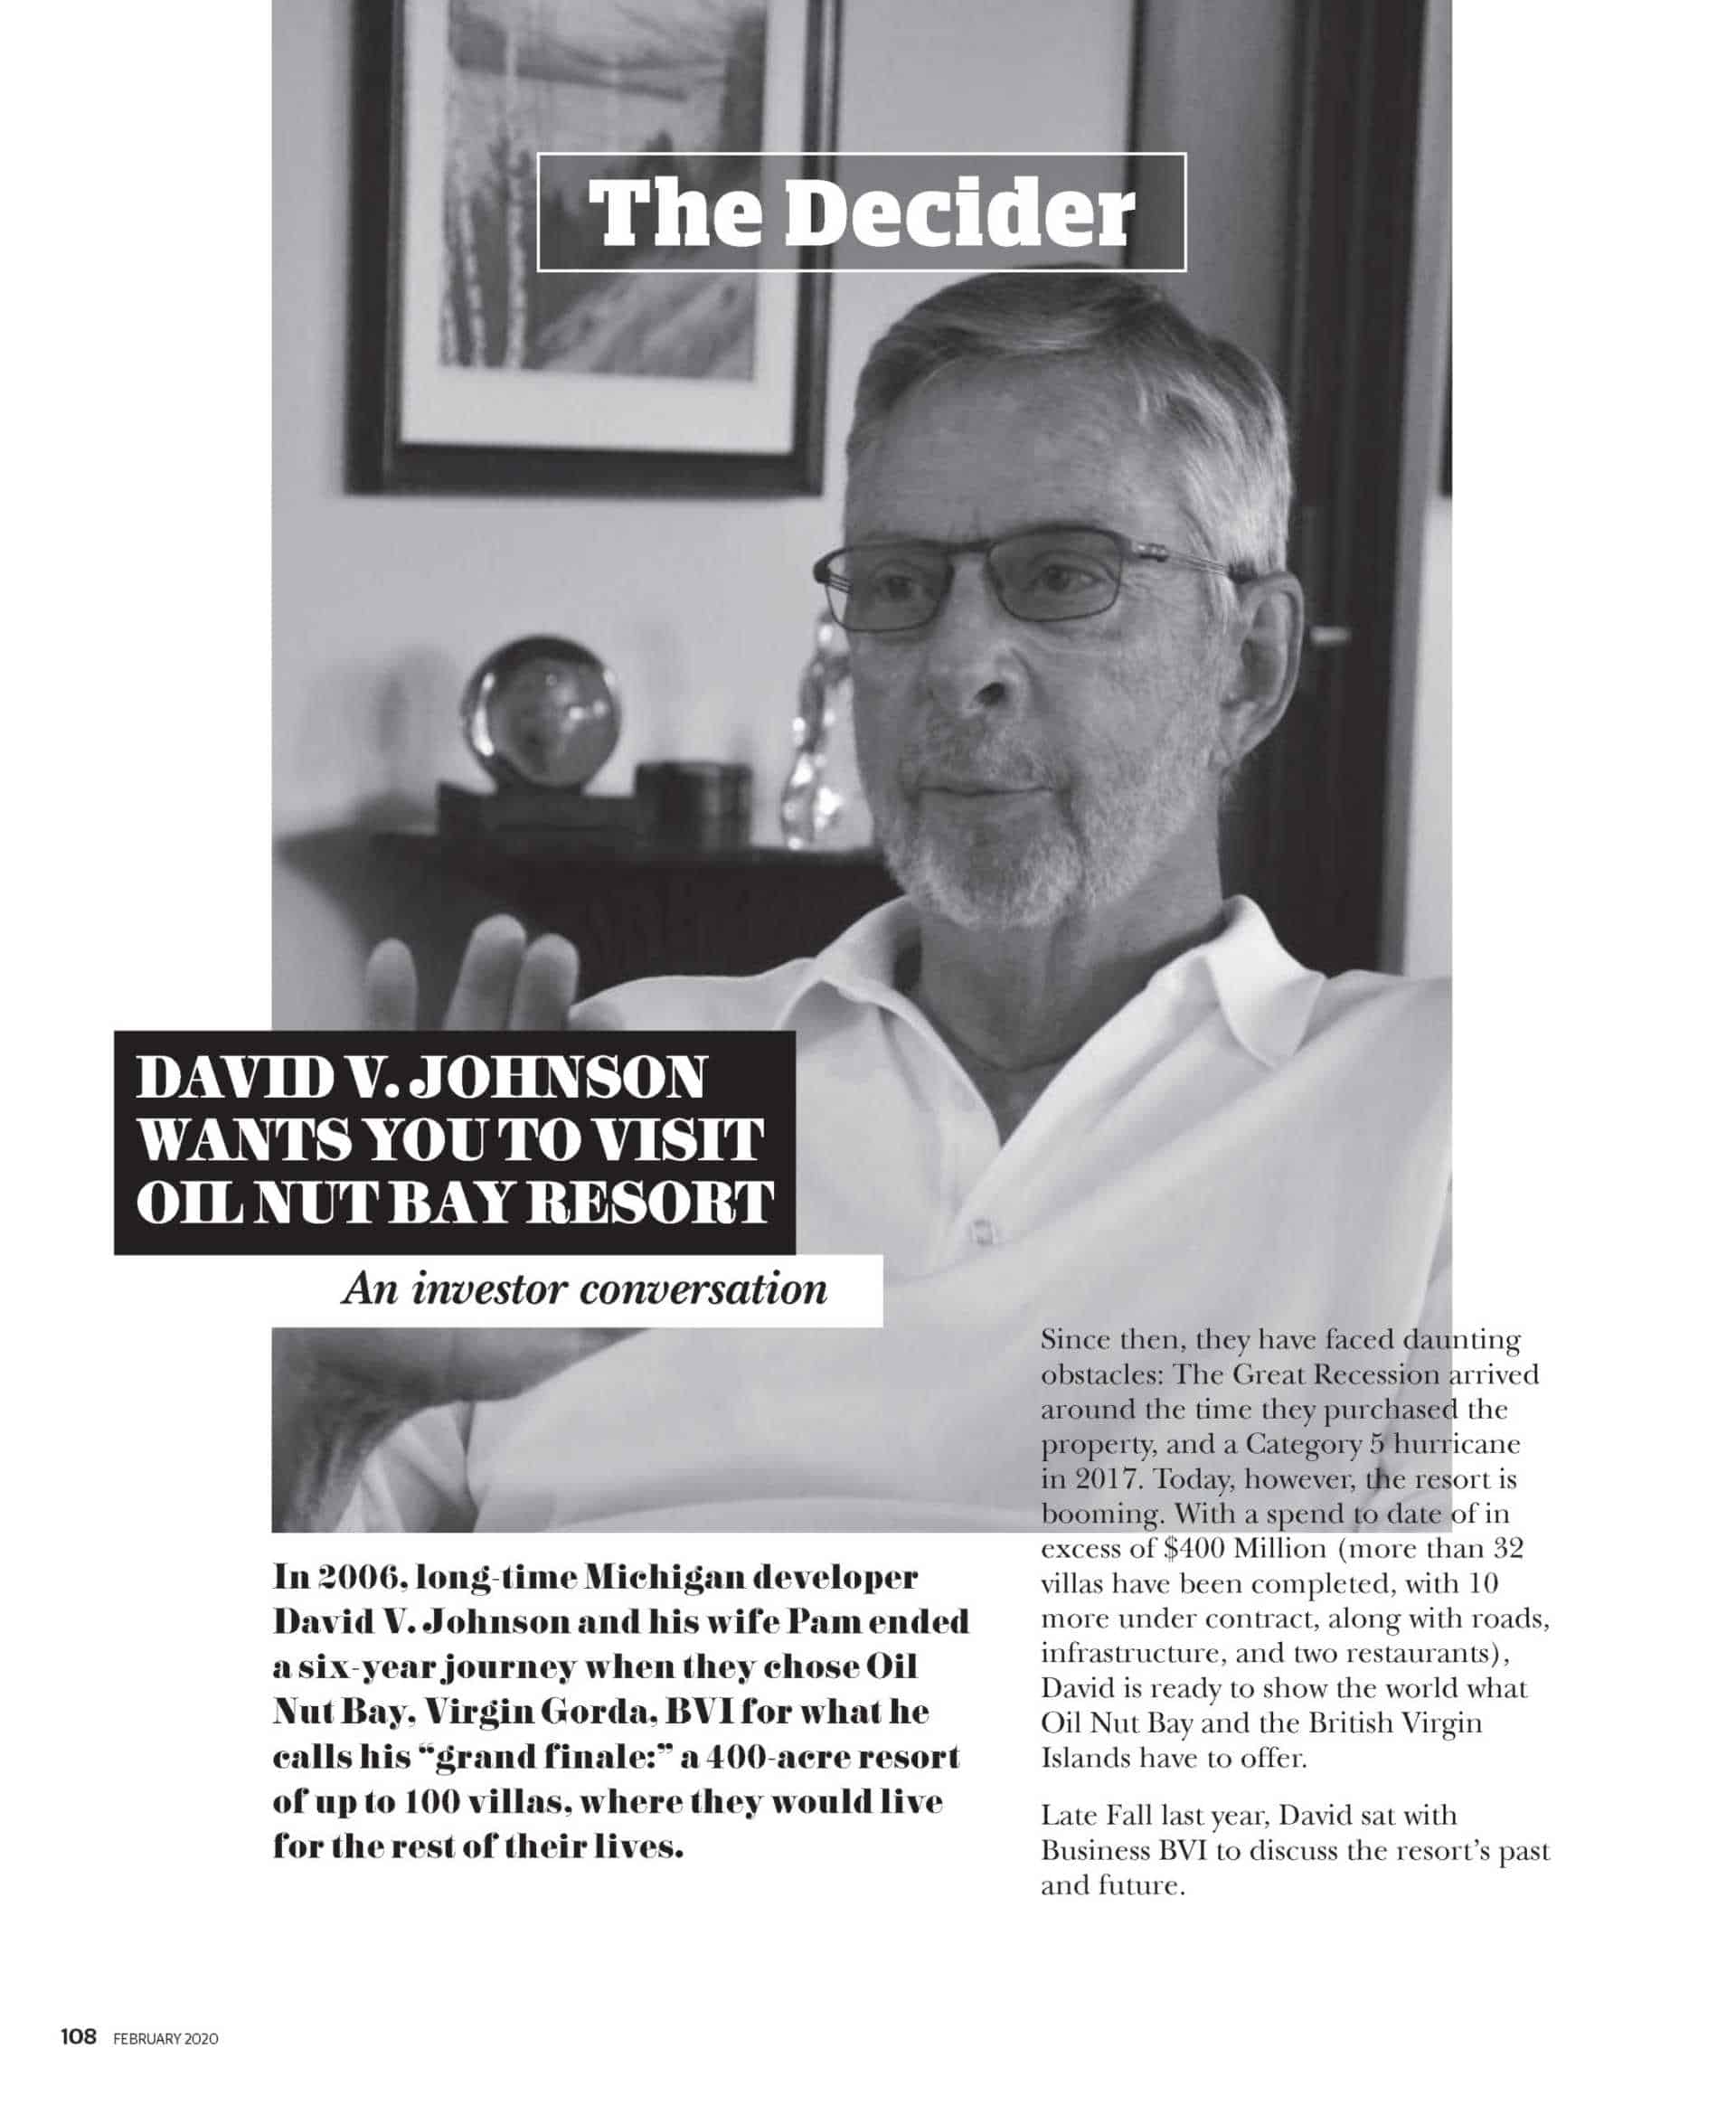 The Decider David V. Johnson